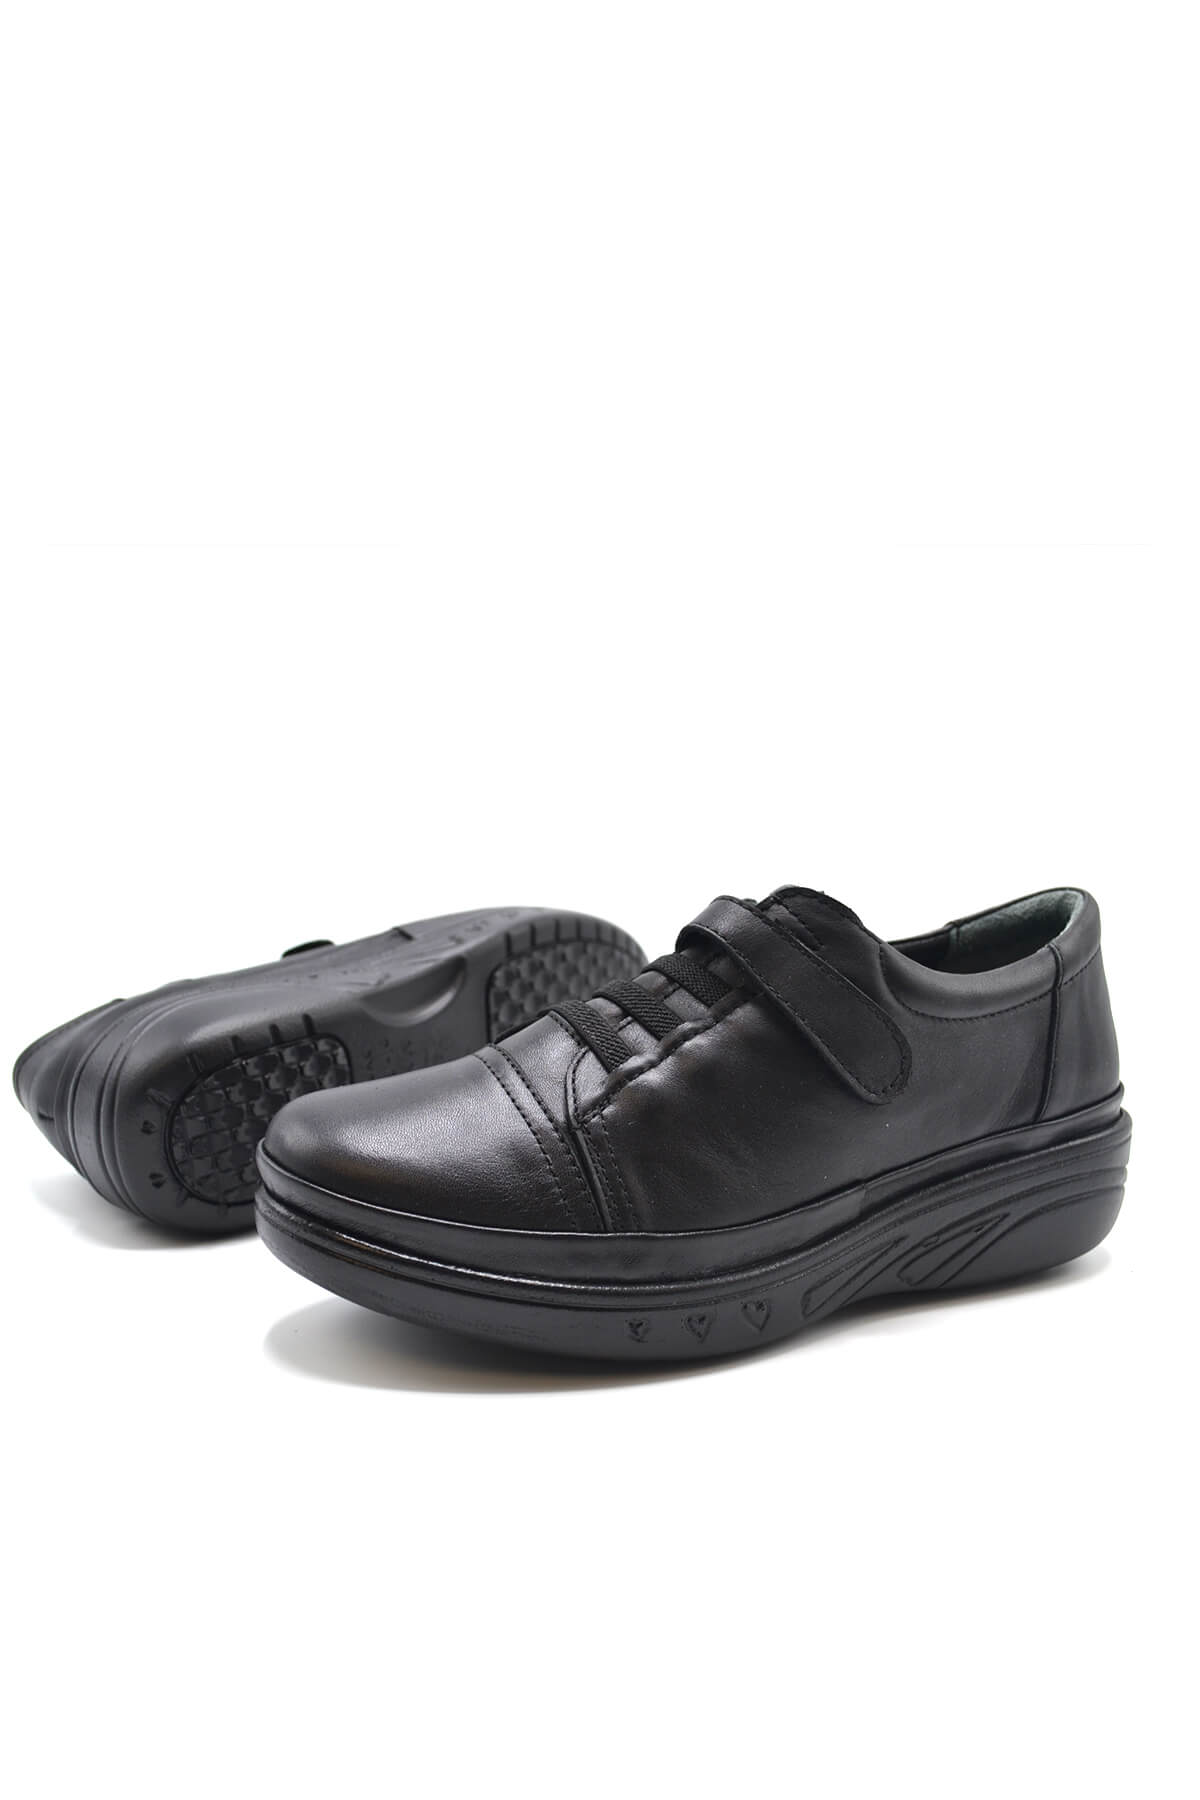 Kadın Comfort Deri Ayakkabı Siyah 1820524K - Thumbnail